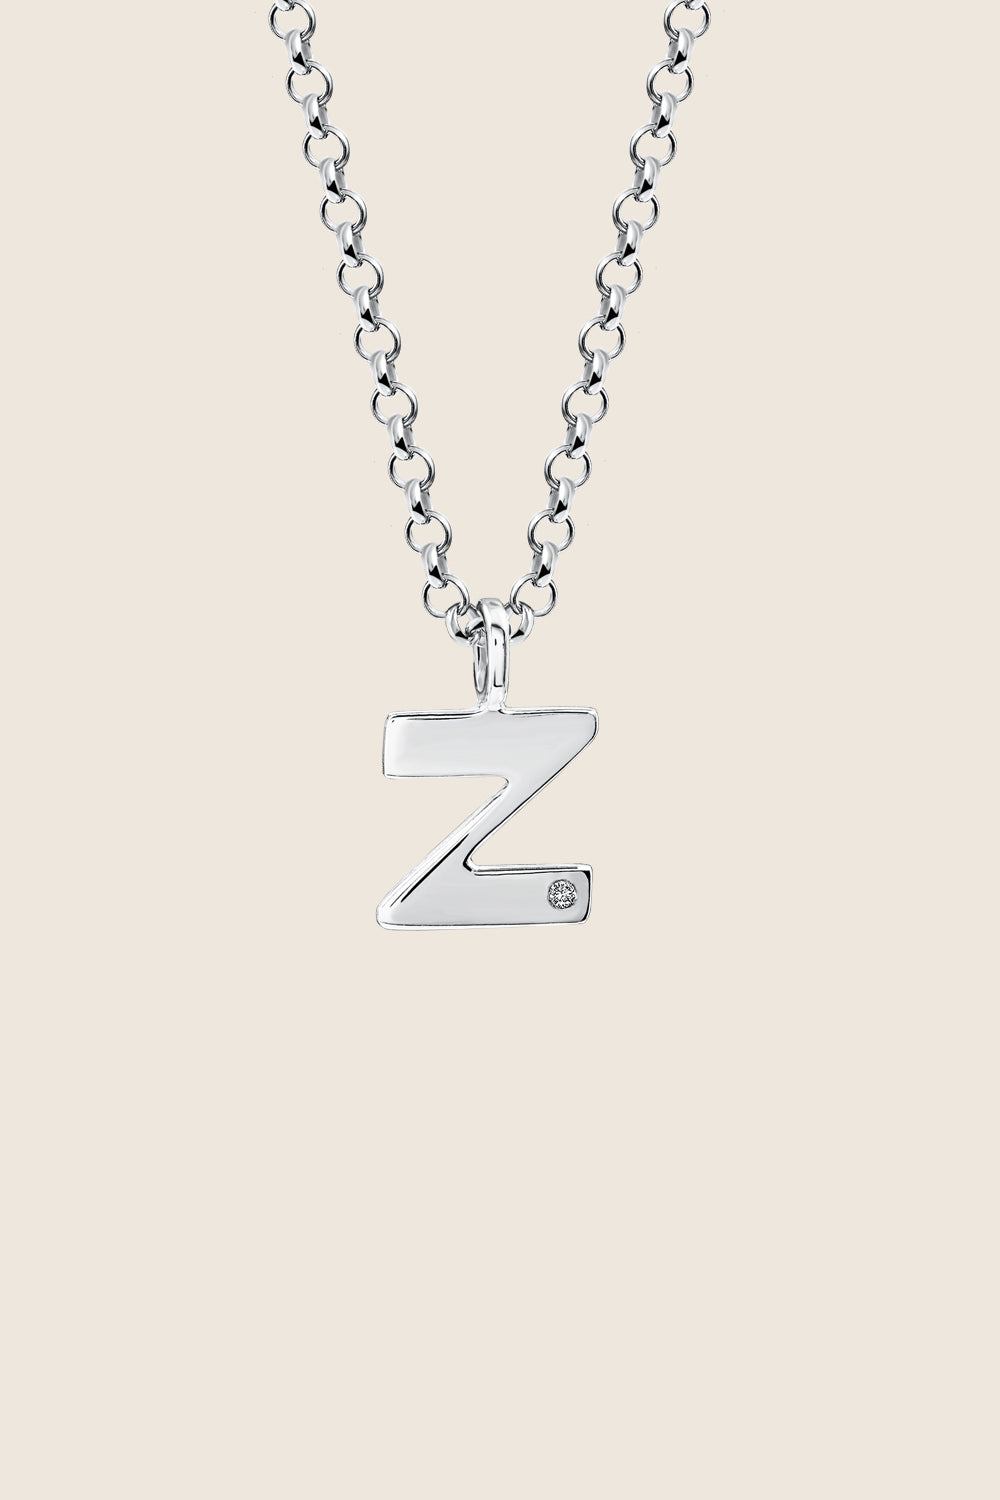 Z necklace